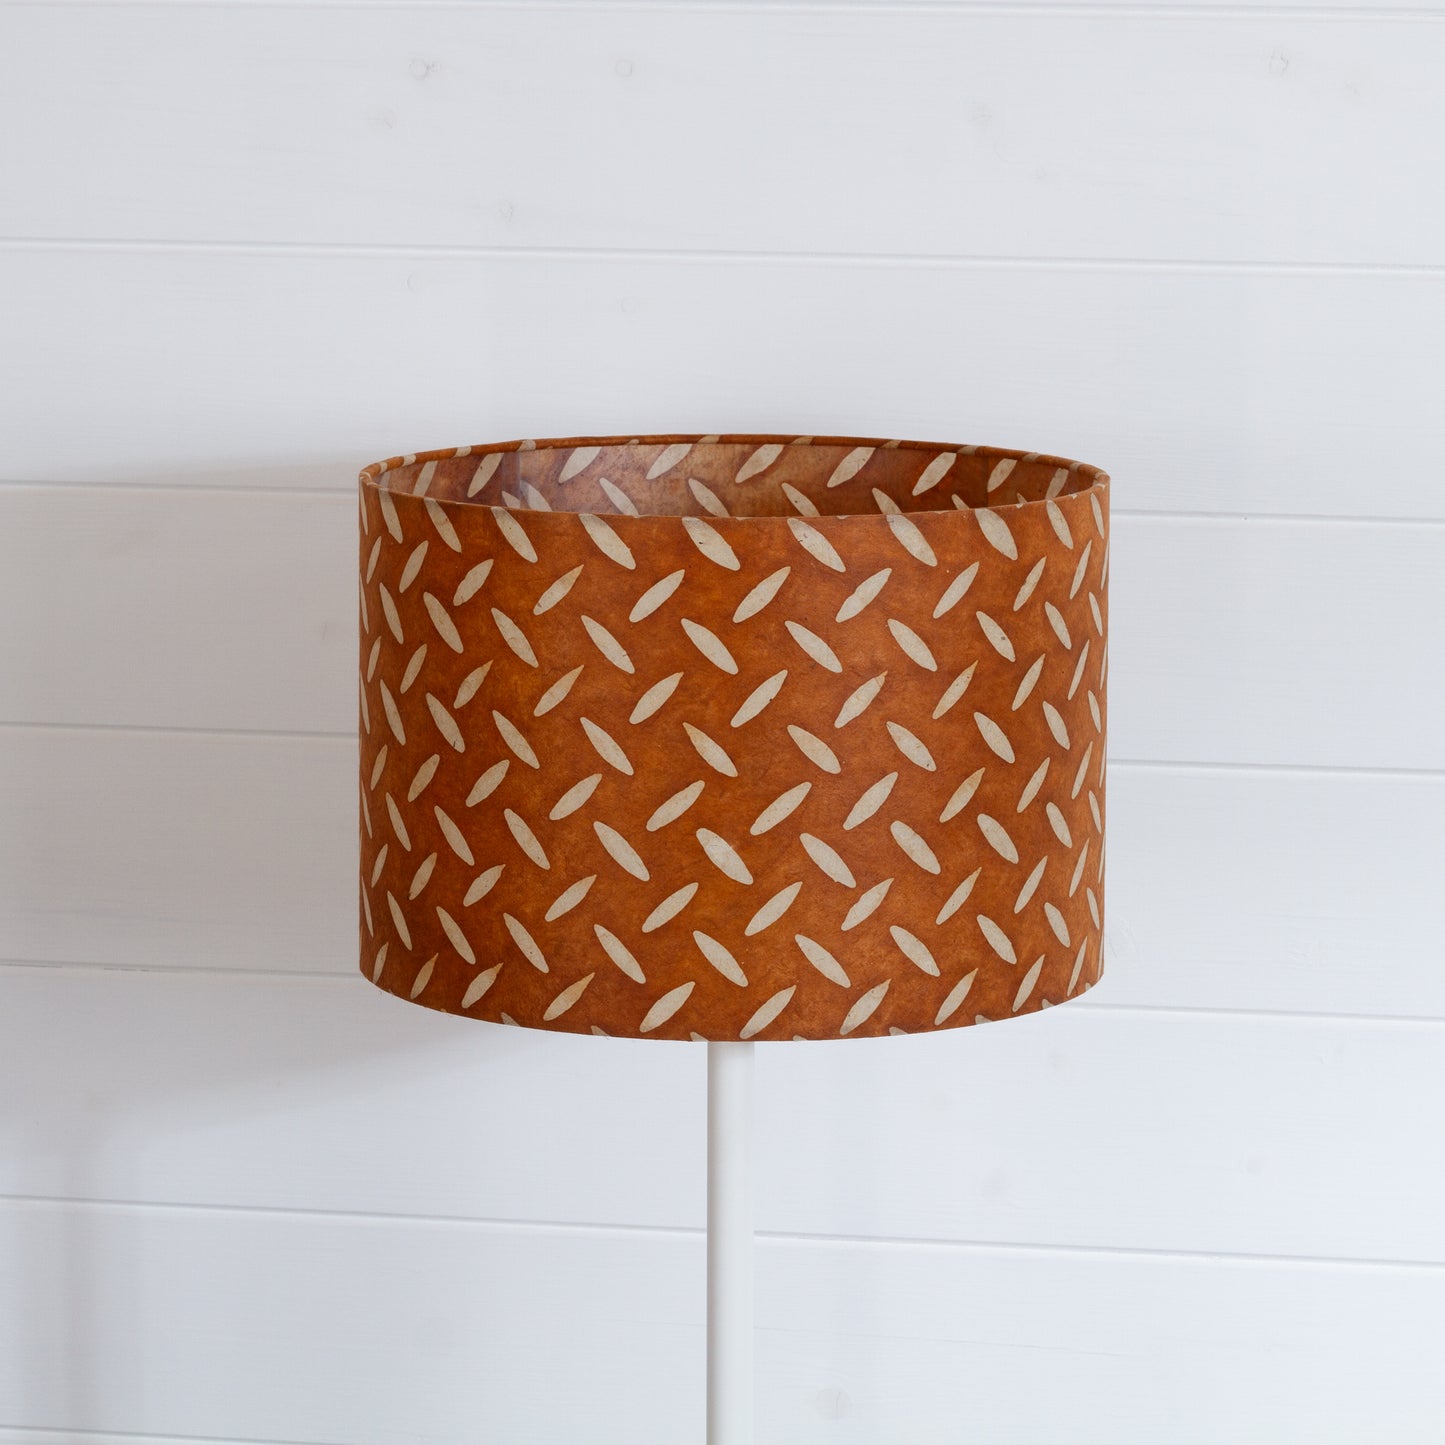 Drum Lamp Shade - P12 - Batik Tread Plate Brown, 30cm(d) x 20cm(h)